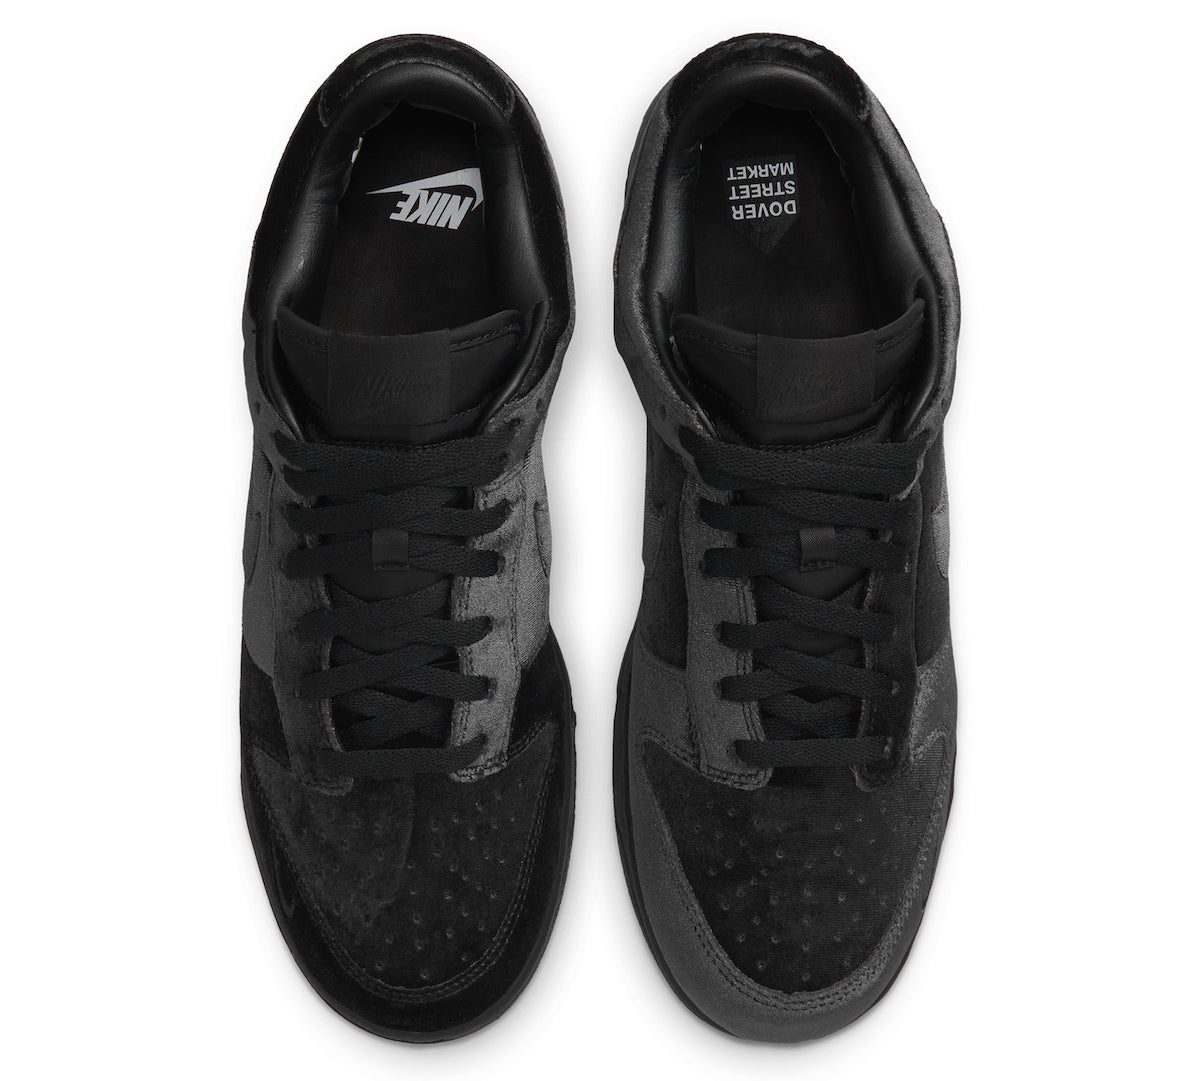 Dover Street Market DSM Nike Dunk Low Velvet Black DH2686-002 Release Date